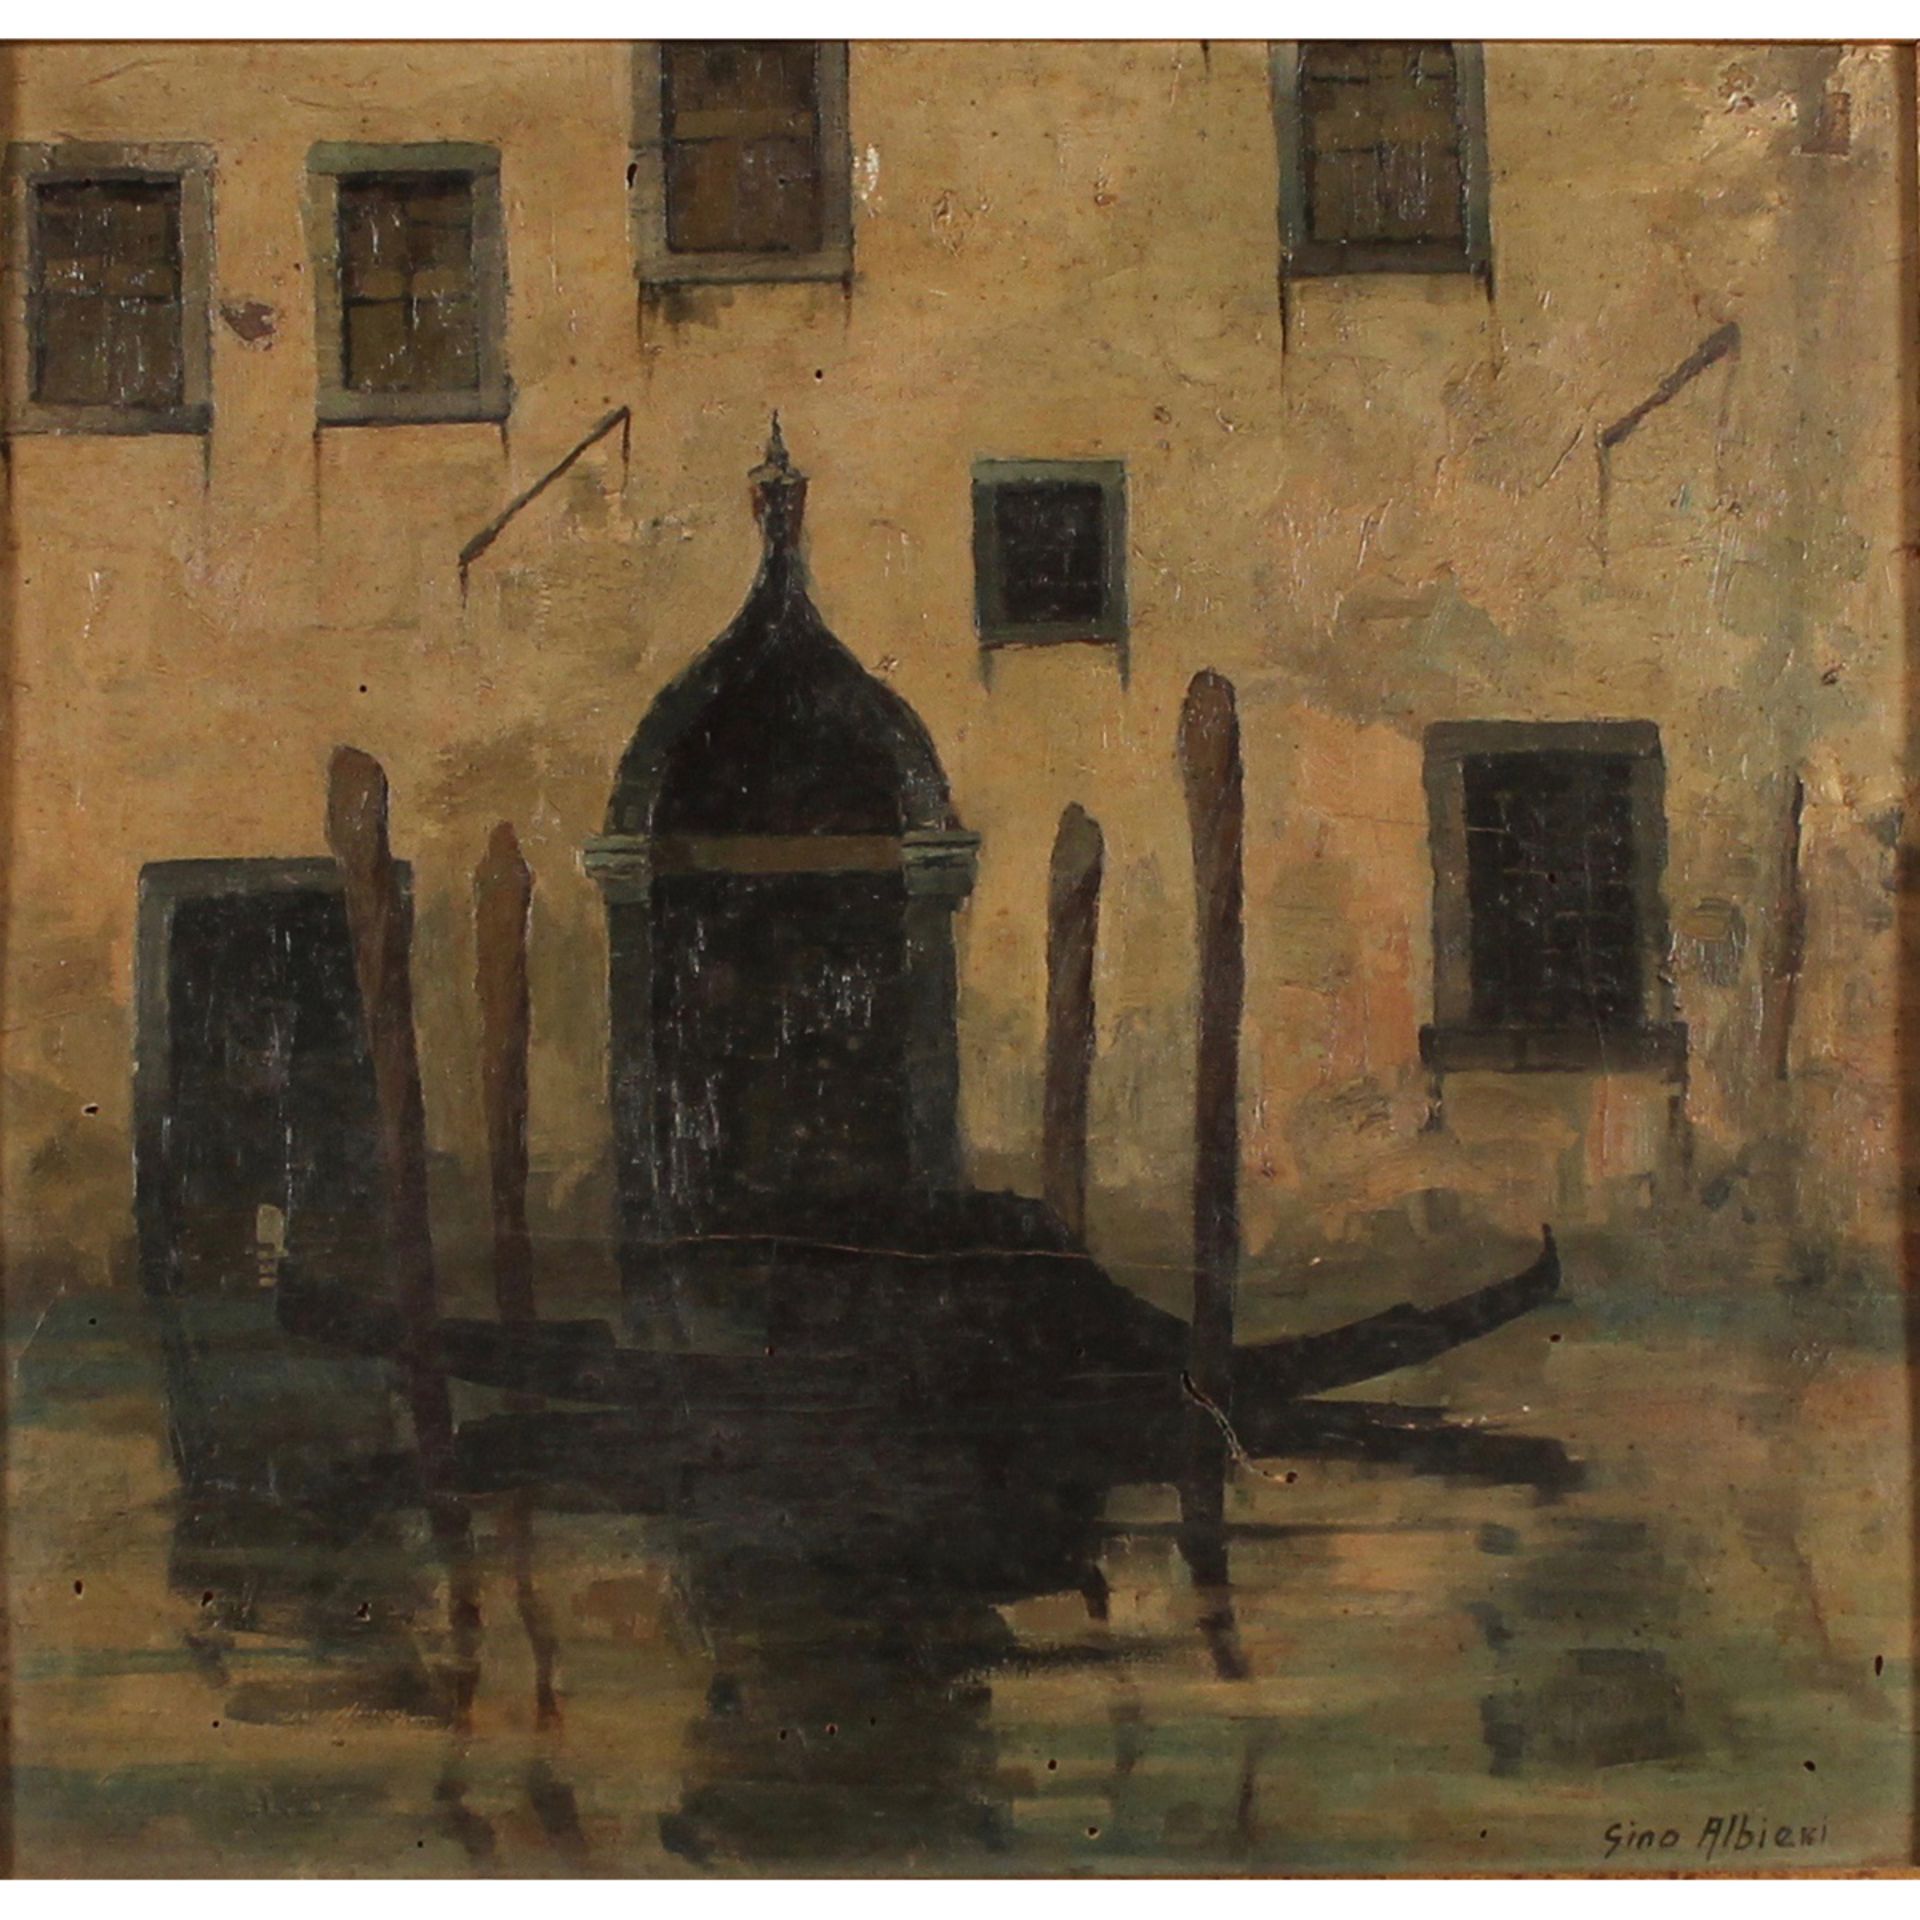 15 GINO ALBIERI (1881-1949) "Gondola all'ormeggio".